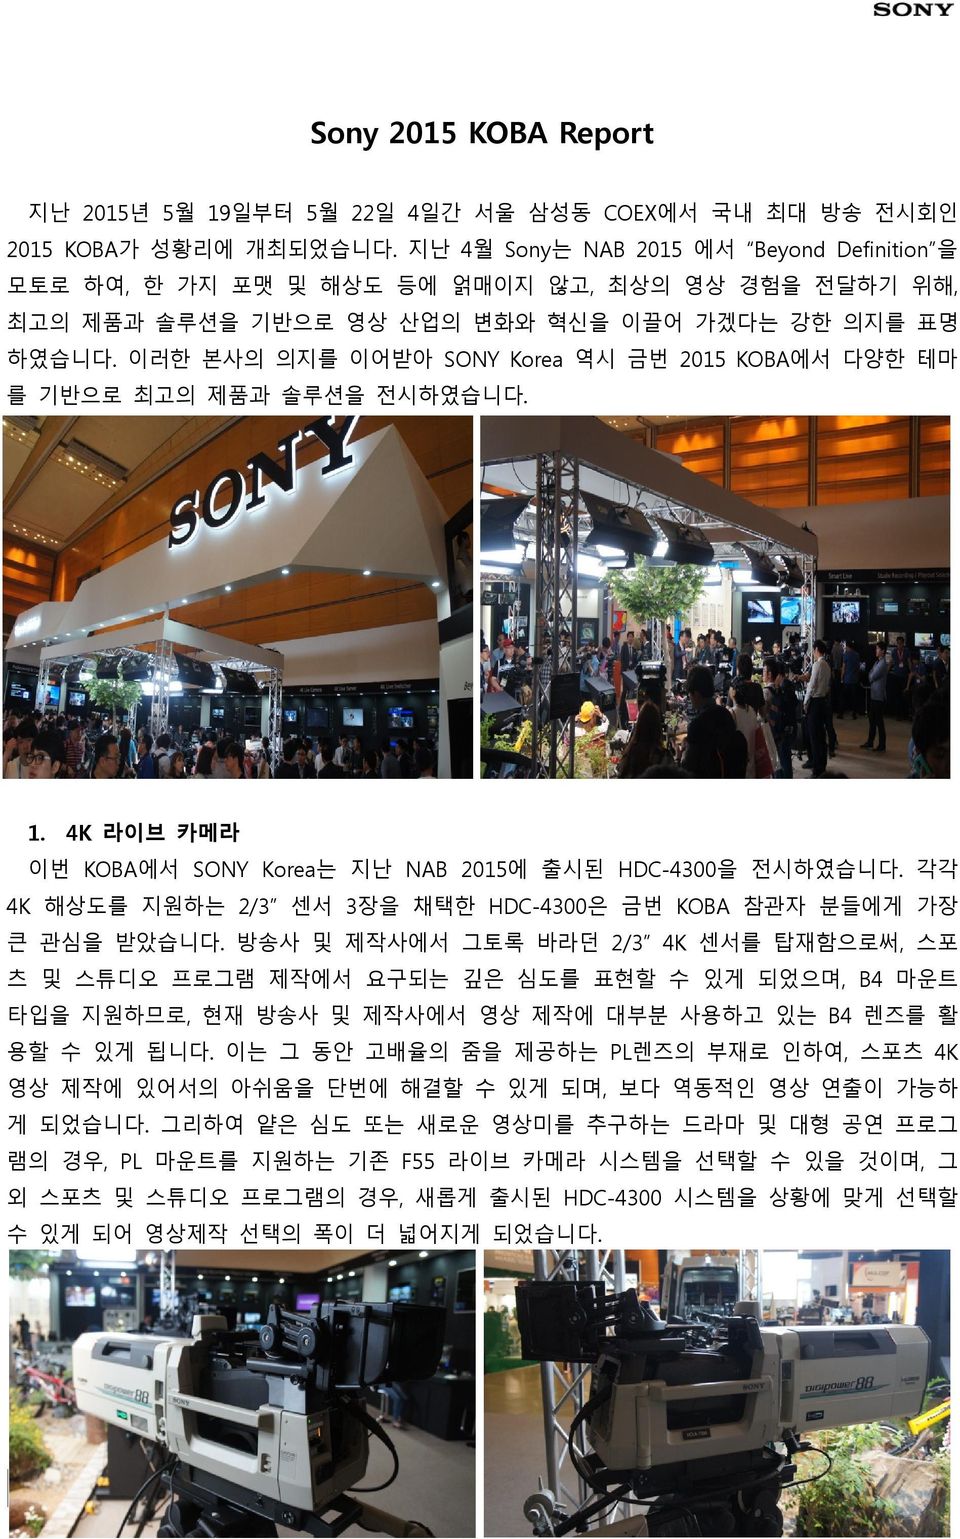 이러한 본사의 의지를 이어받아 SONY Korea 역시 금번 2015 KOBA에서 다양한 테마 를 기반으로 최고의 제품과 솔루션을 전시하였습니다. 1. 4K 라이브 카메라 이번 KOBA에서 SONY Korea는 지난 NAB 2015에 출시된 HDC-4300을 전시하였습니다.